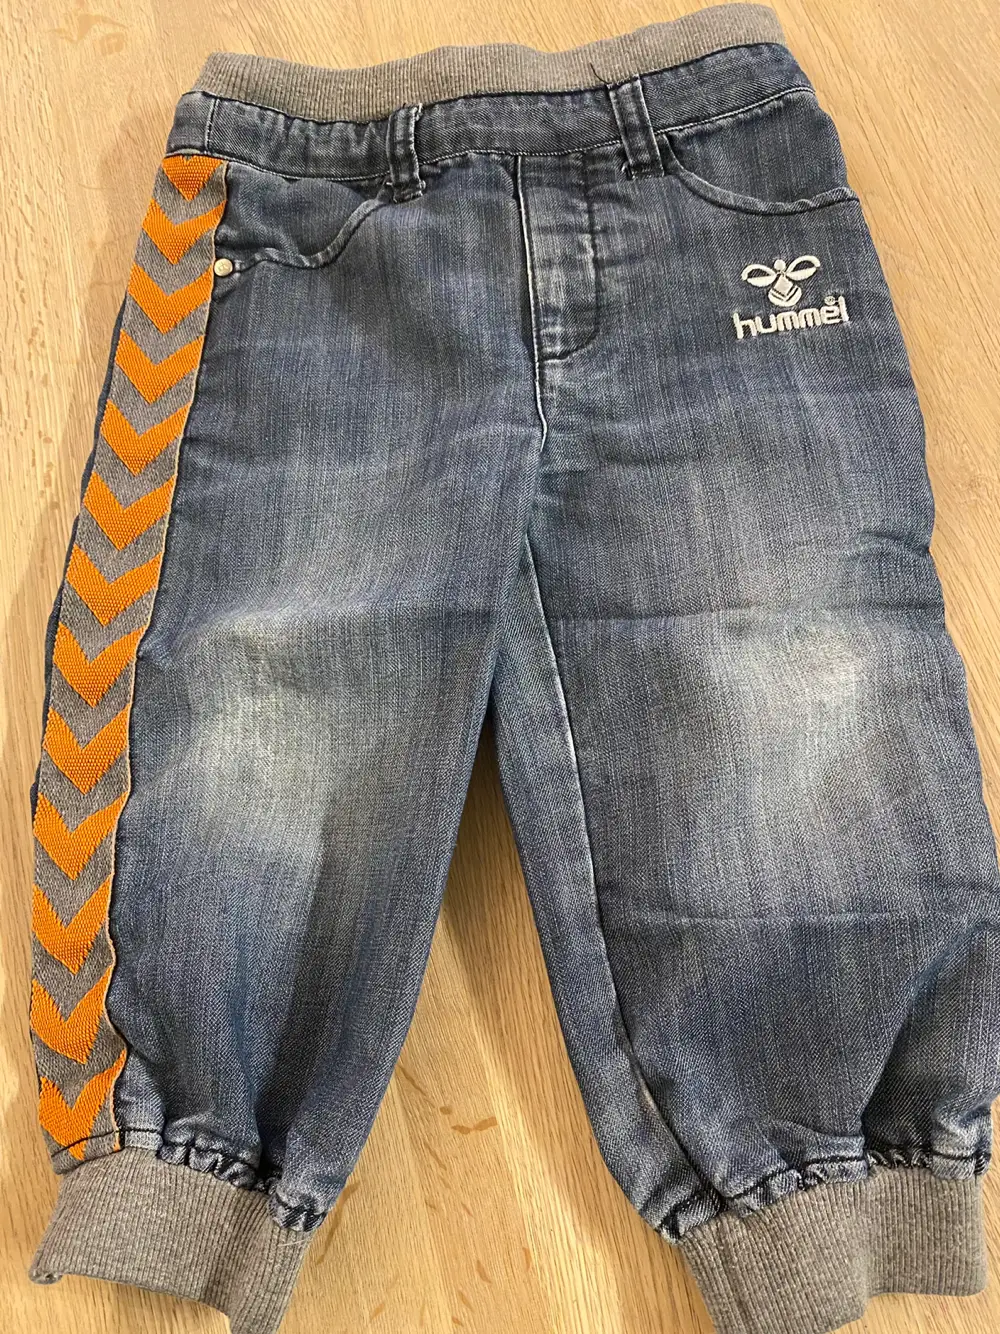 Køb Hummel bukser i 86 af Kirsti Reshopper · Shop til børn, mor og bolig